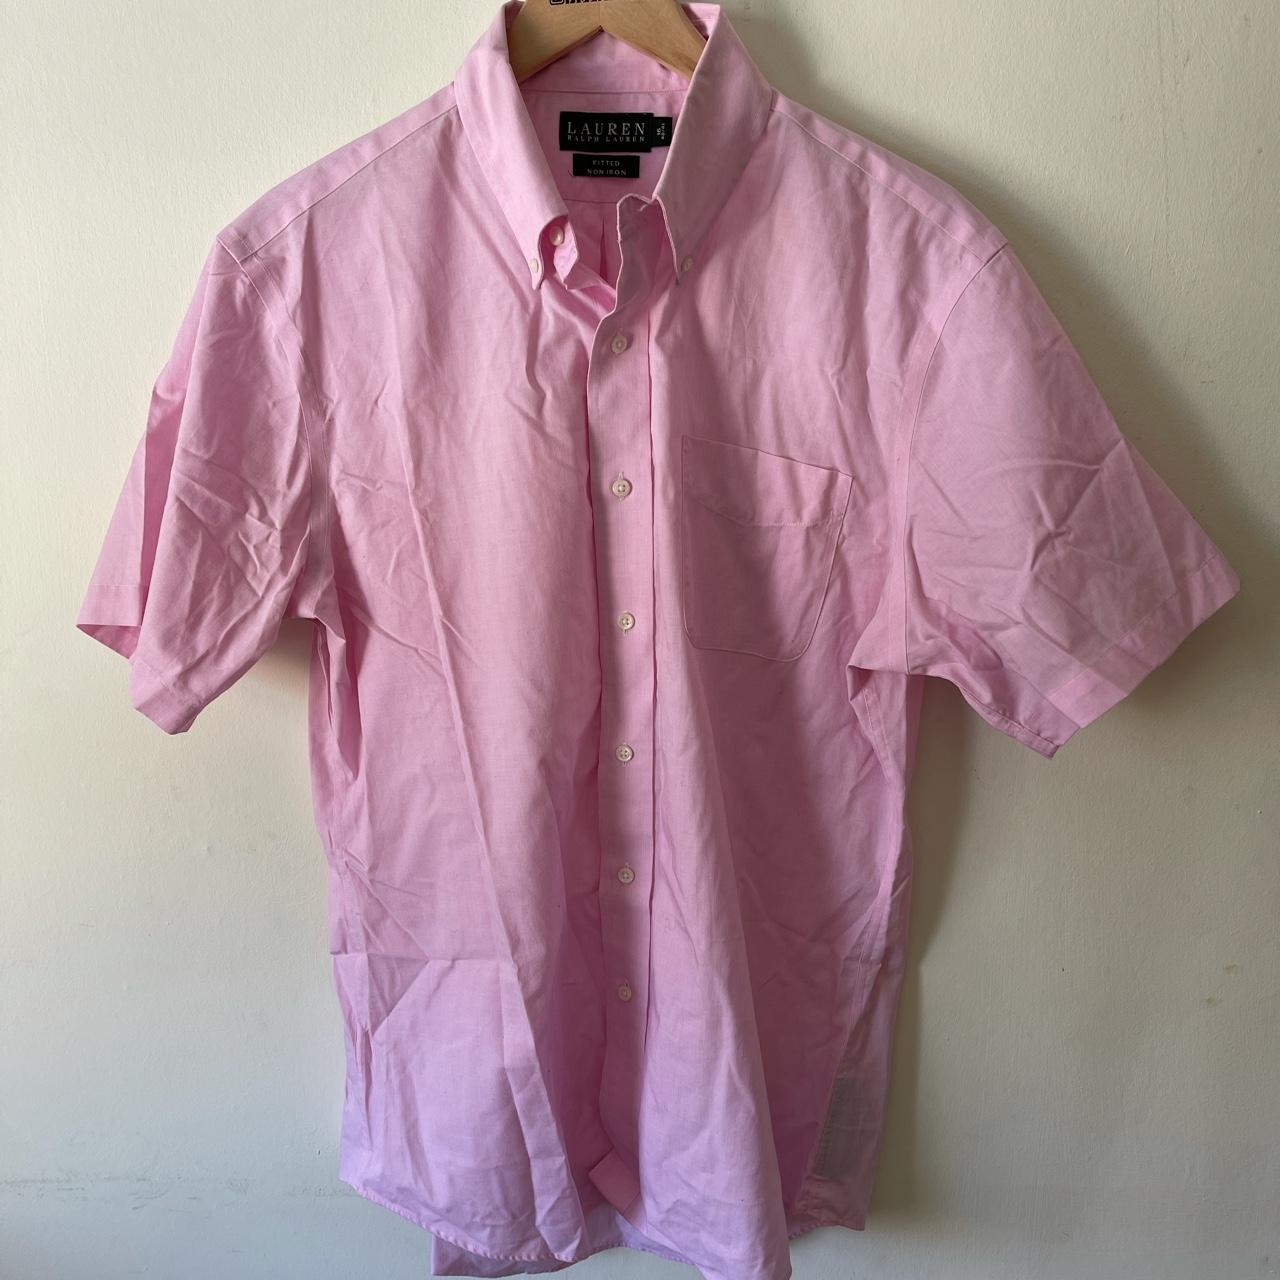 Ralph Lauren pink shirt- green label- shirt sleeved... - Depop